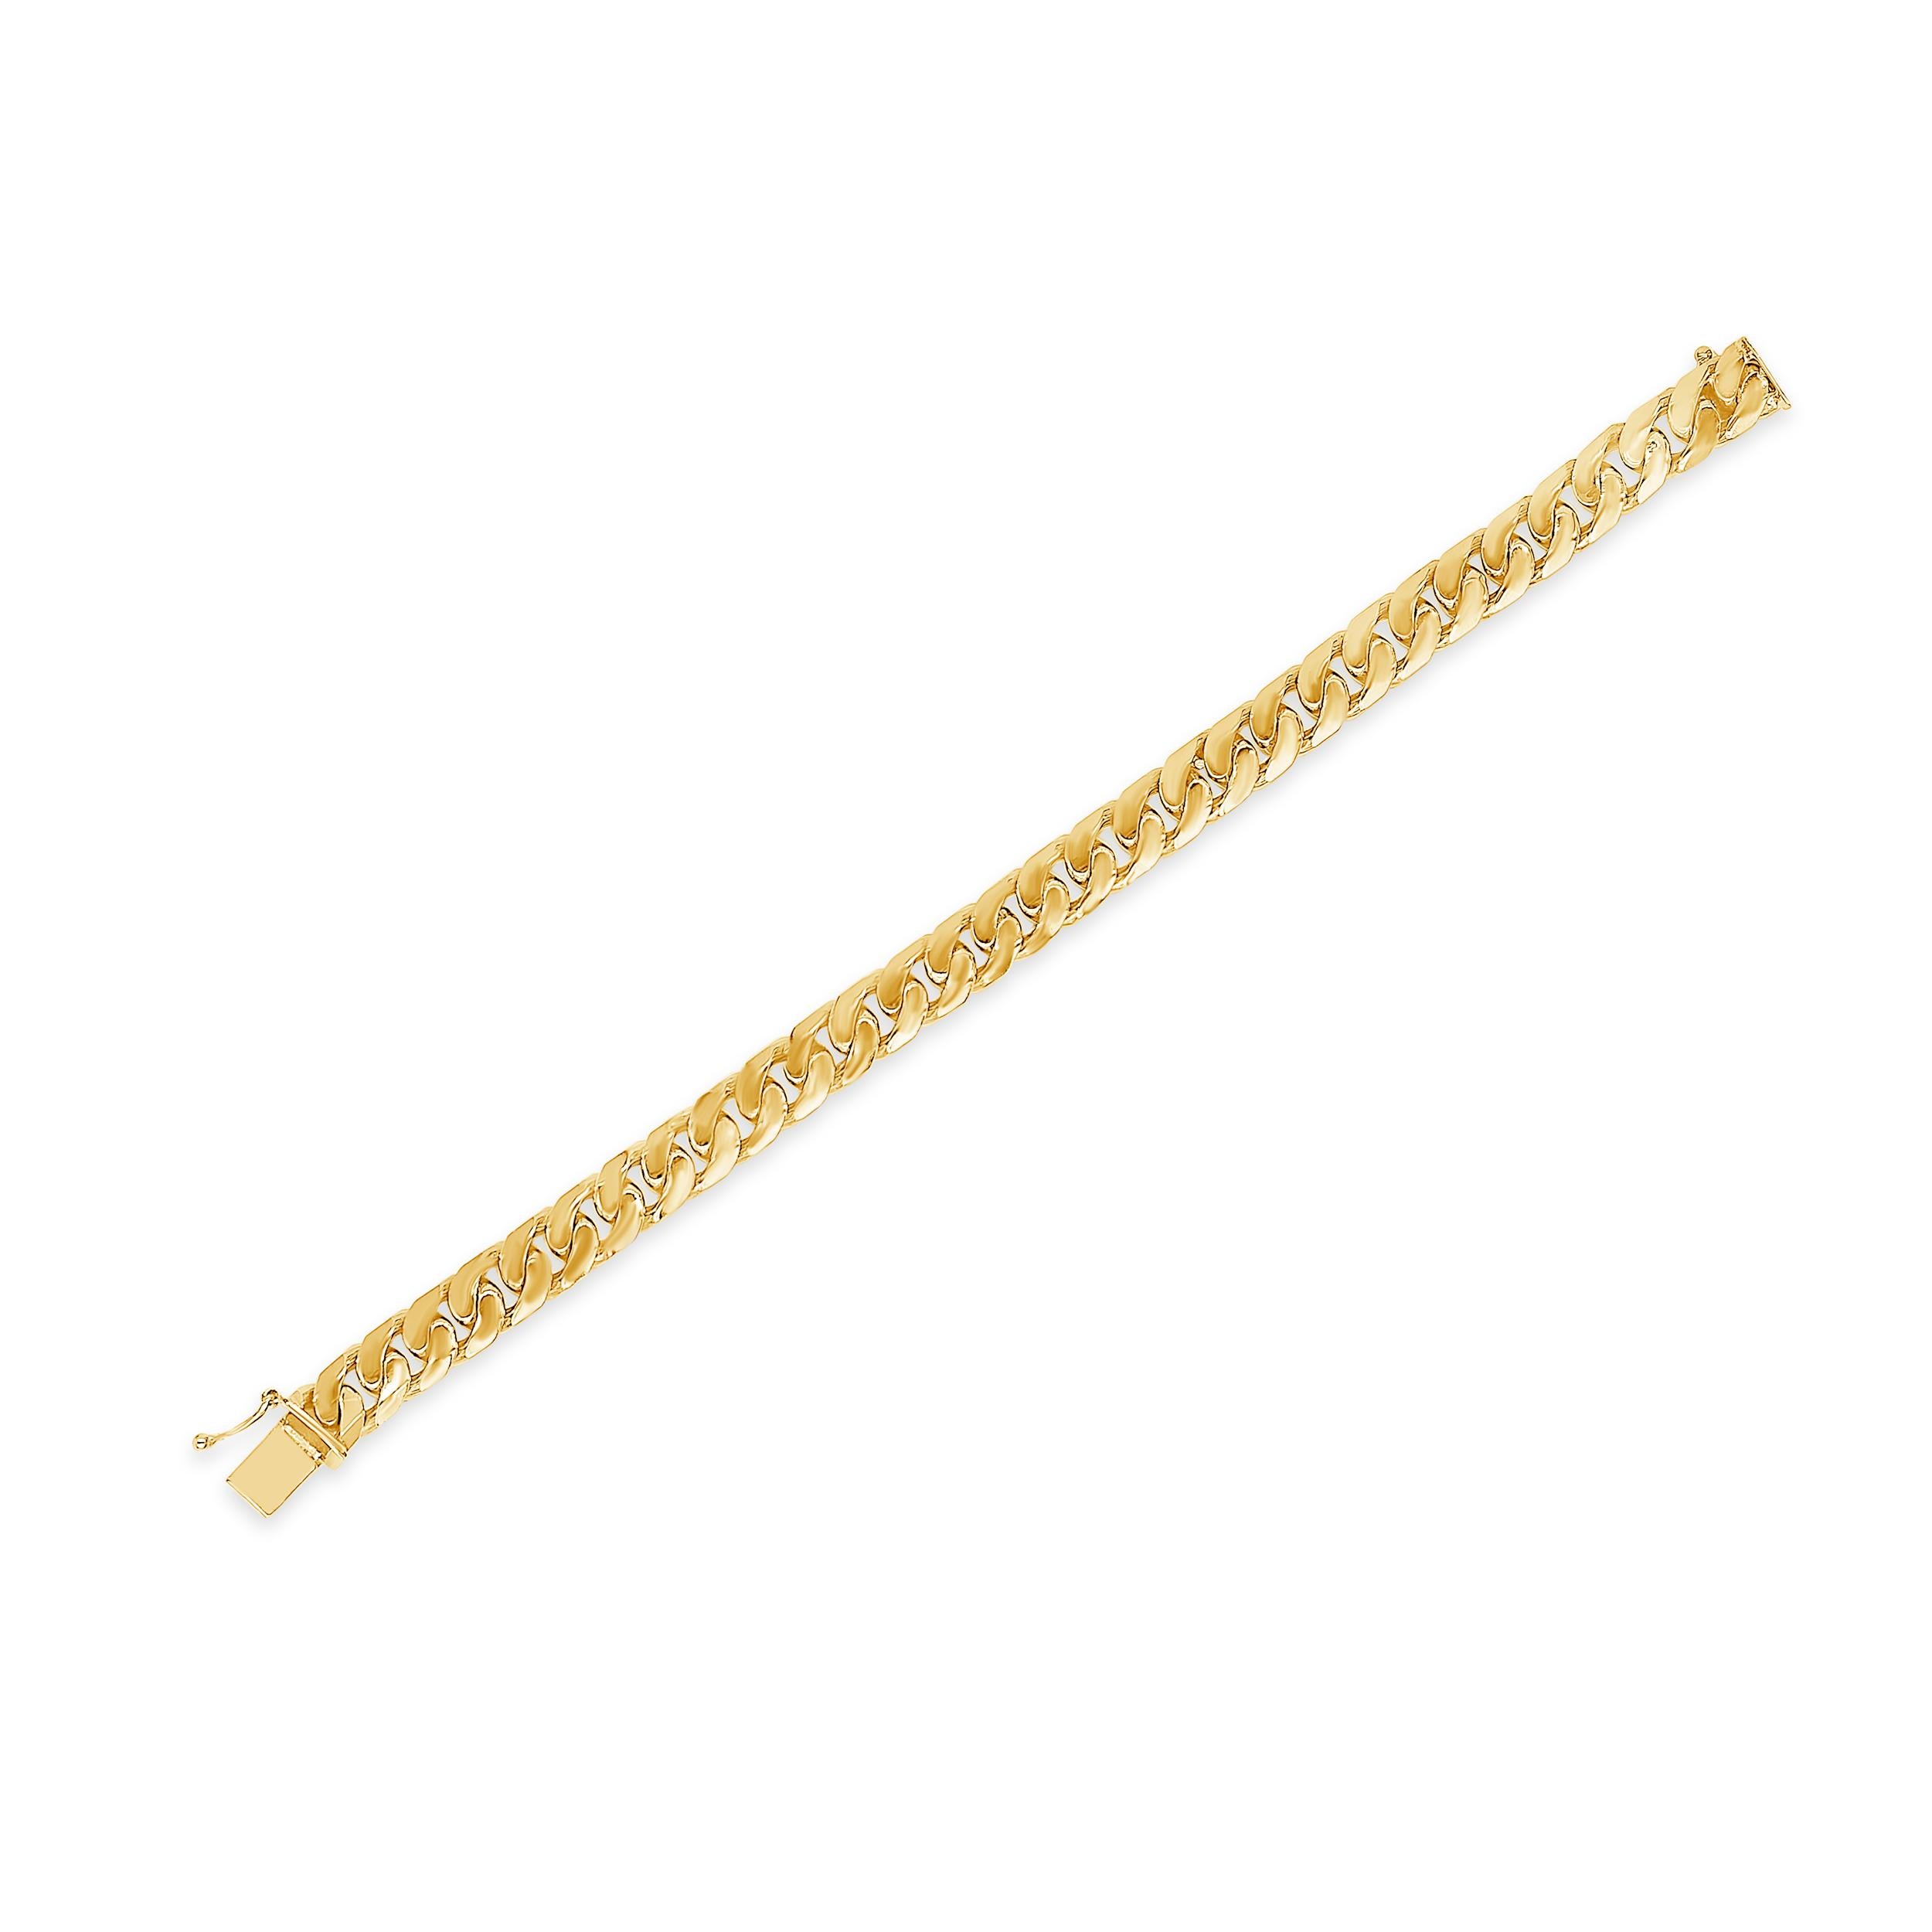 Une chaîne classique à maillons cubains réalisée en or jaune 14 carats. Pèse 55,43 grammes. 7.5 pouces de longueur.

